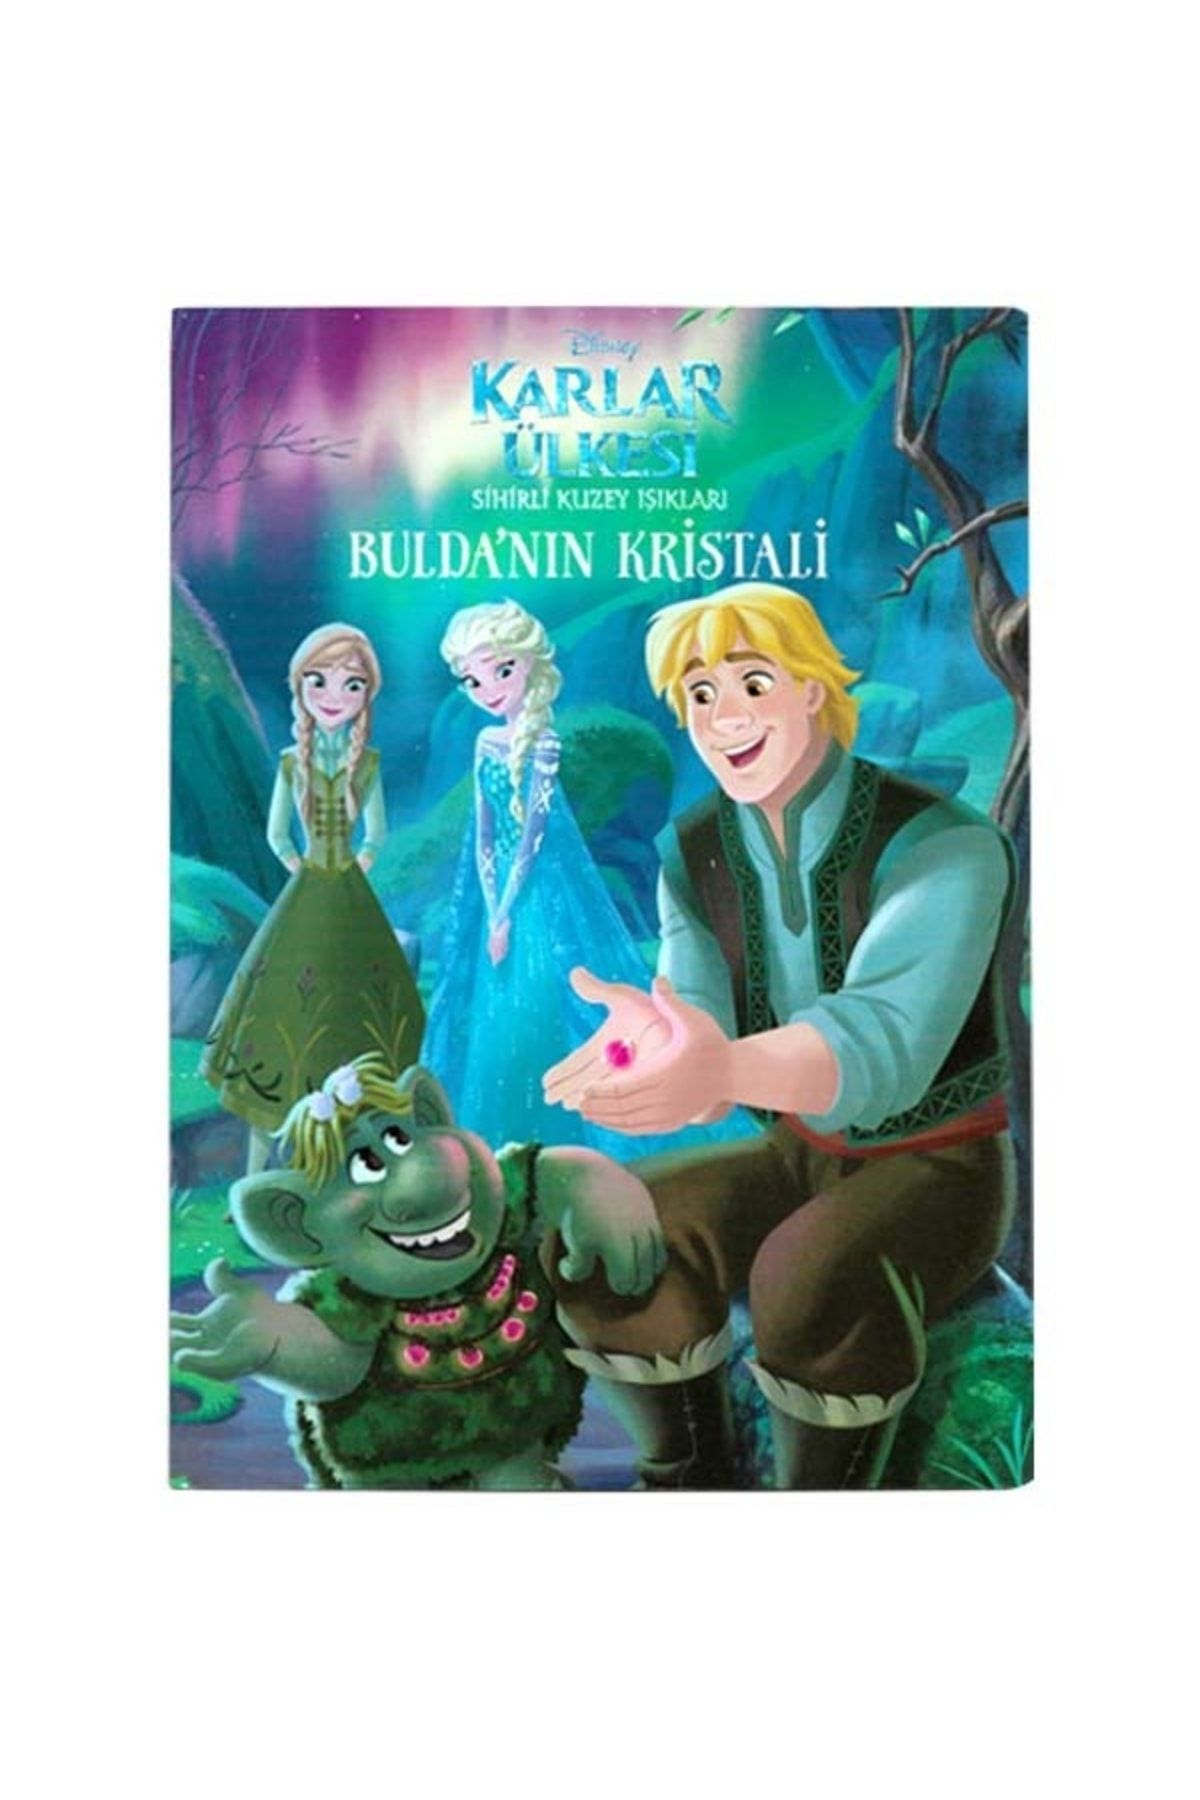 DİSNEY Disney Frozen Karlar Ülkesi Bulda'nın Kristali- Sihirli Kuzey Işıkları Çocuk Kitap Frozen